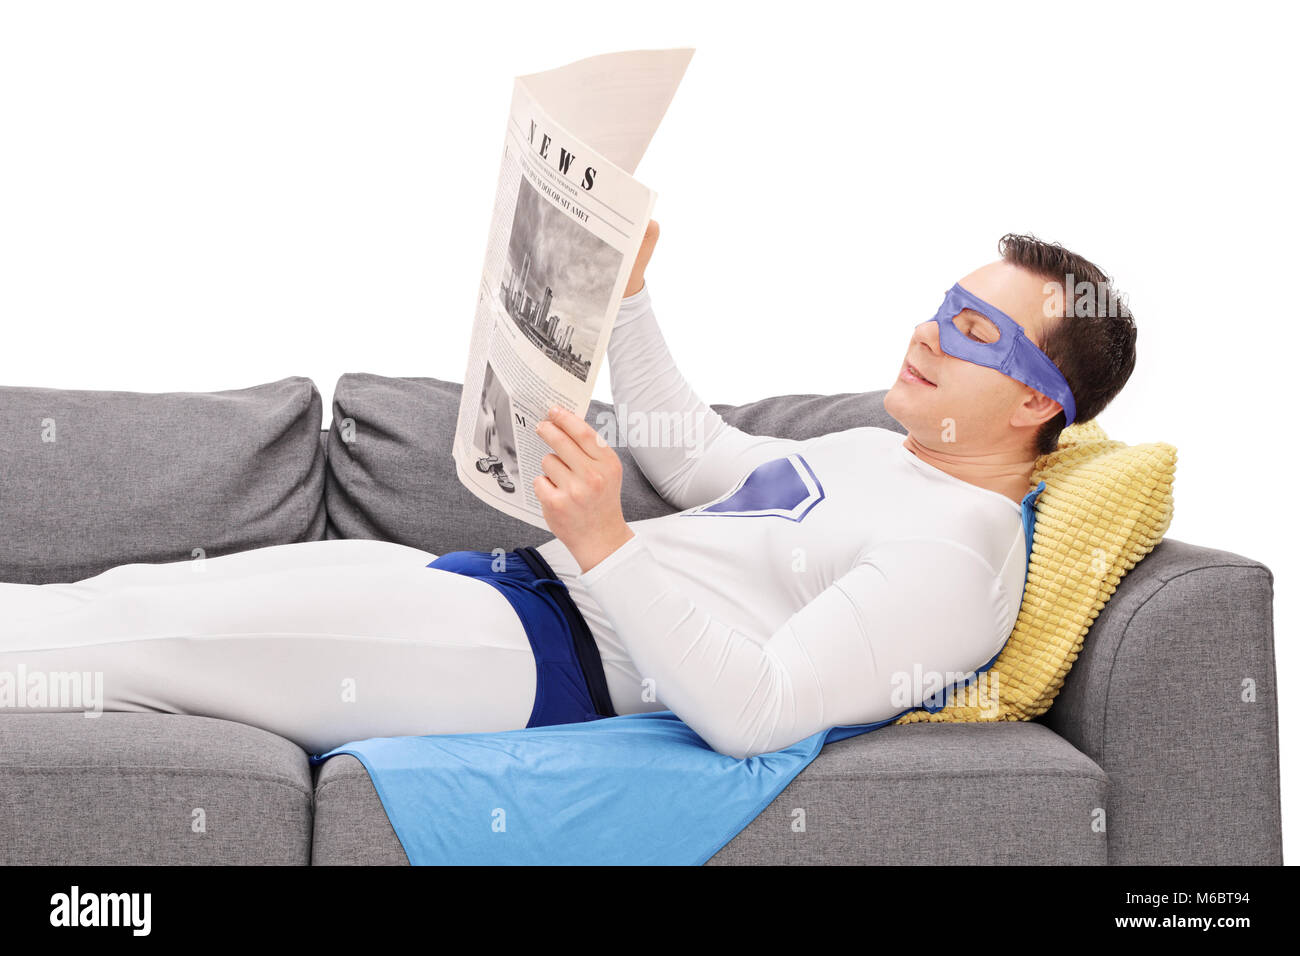 Super Héros allongé sur un canapé et lit un journal isoalted sur fond blanc Banque D'Images